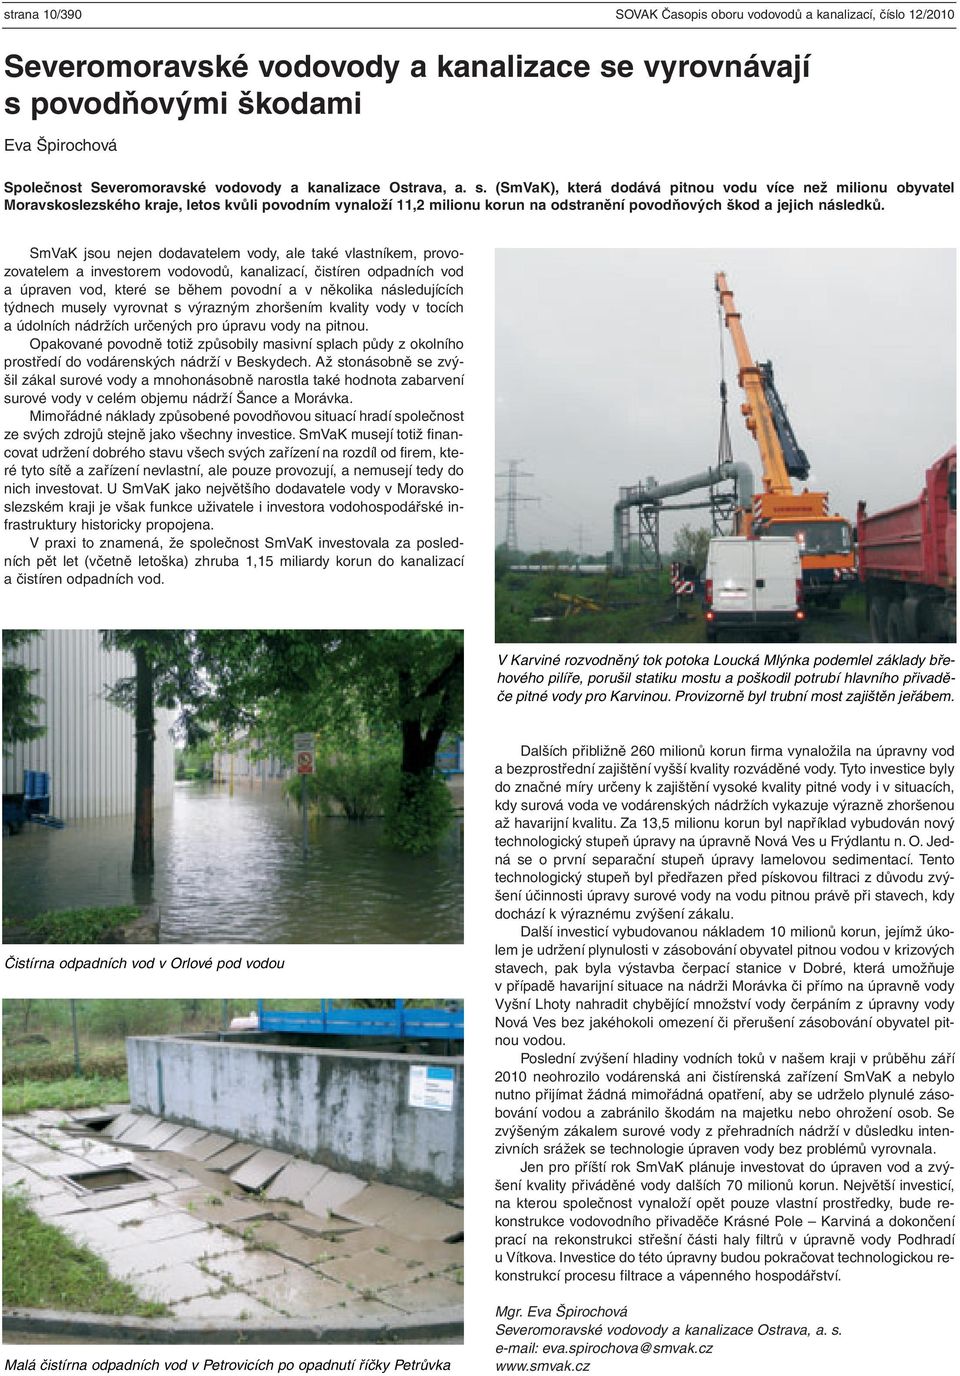 (SmVaK), která dodává pitnou vodu více než milionu obyvatel Moravskoslezského kraje, letos kvůli povodním vynaloží 11,2 milionu korun na odstranění povodňových škod a jejich následků.